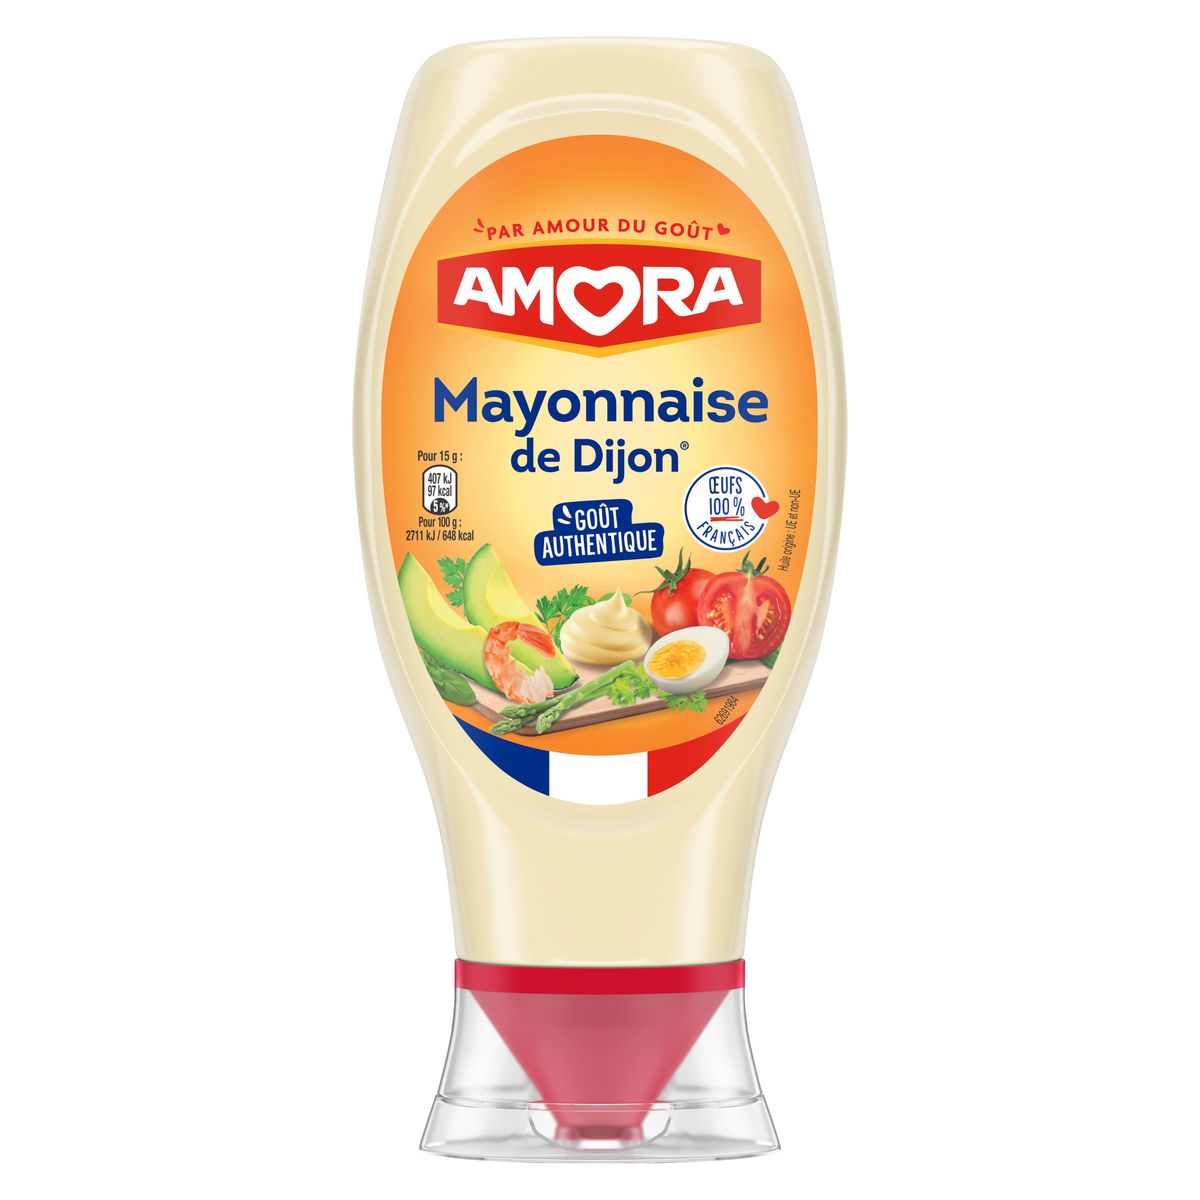 AMORA Mayonnaise de Dijon flacon souple 415g